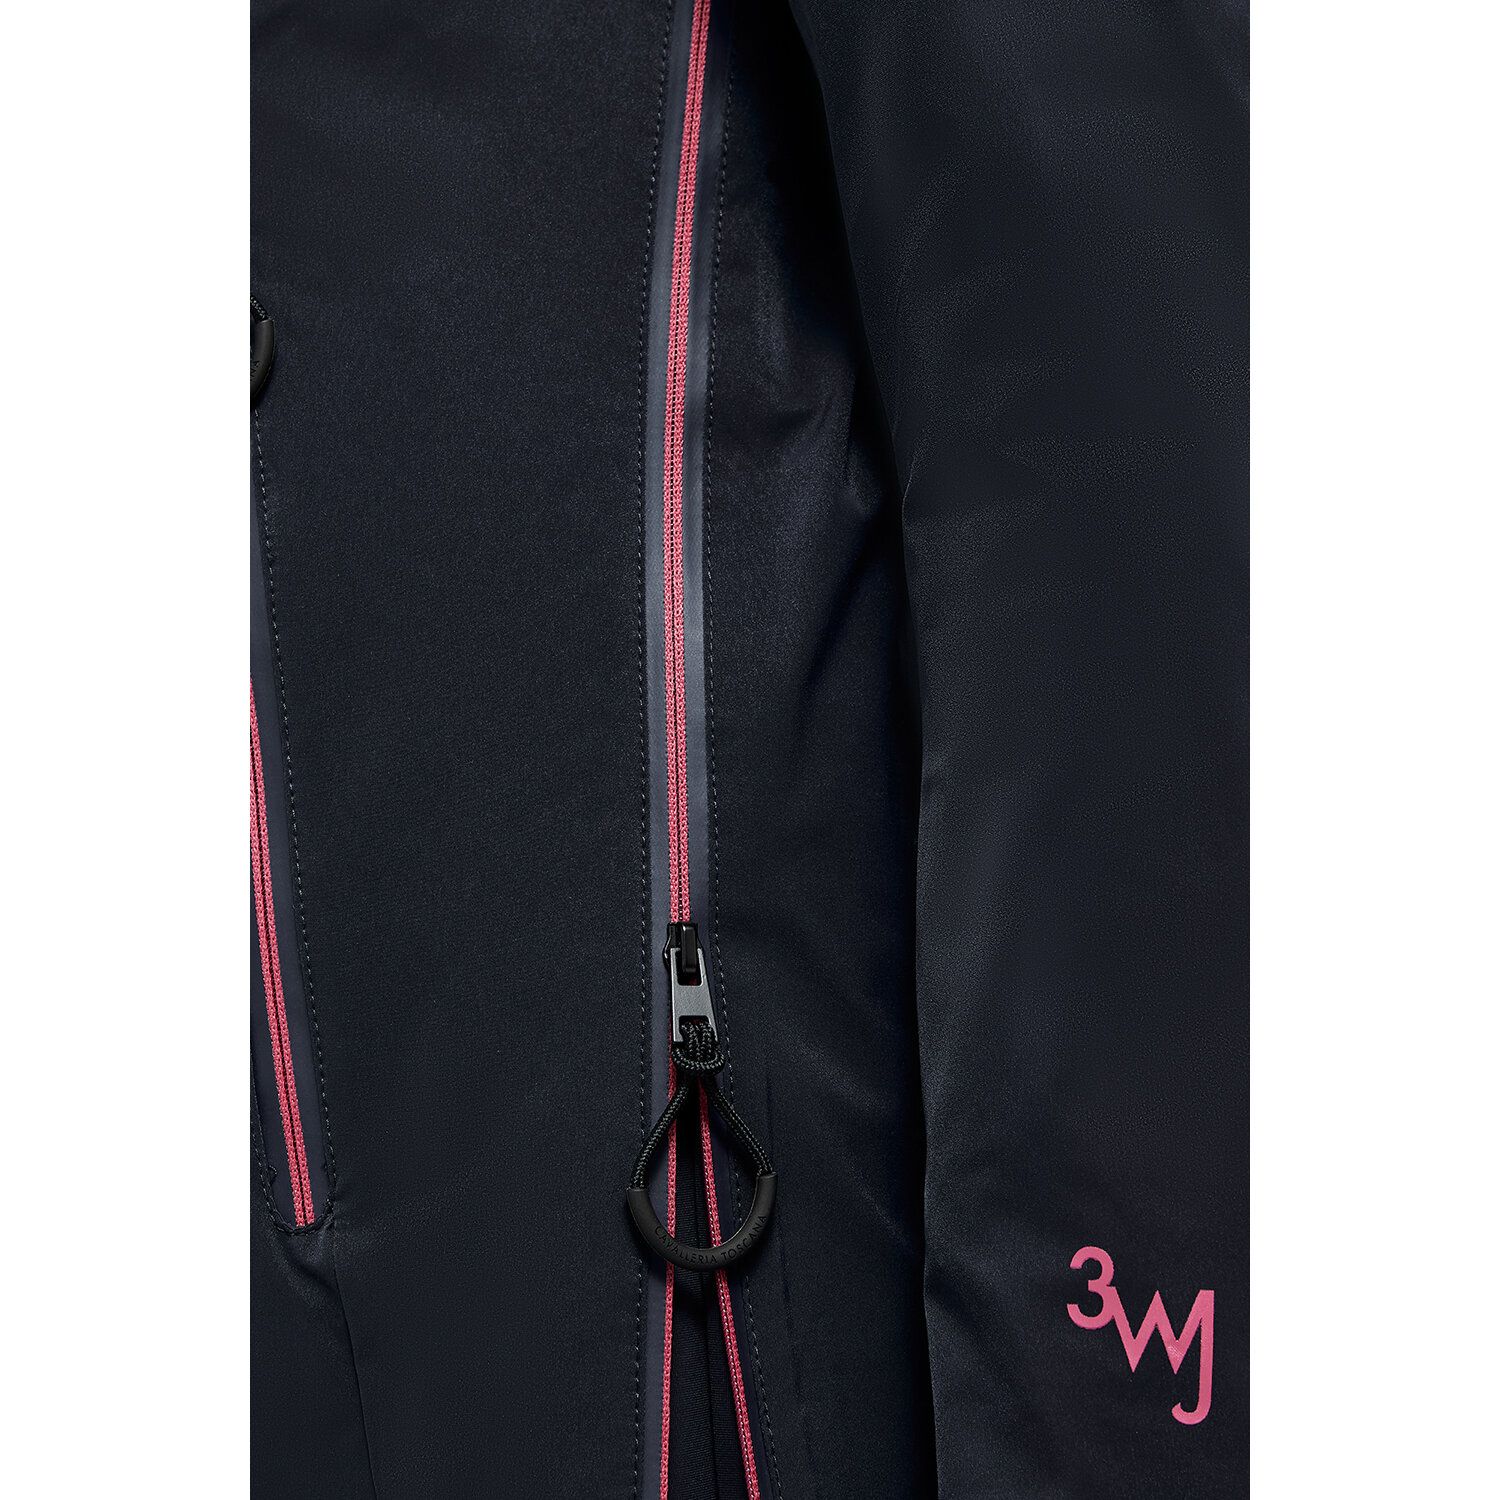 Cavalleria Toscana Women's Revo 3-Way Waterproof Jacket  NAVY-5